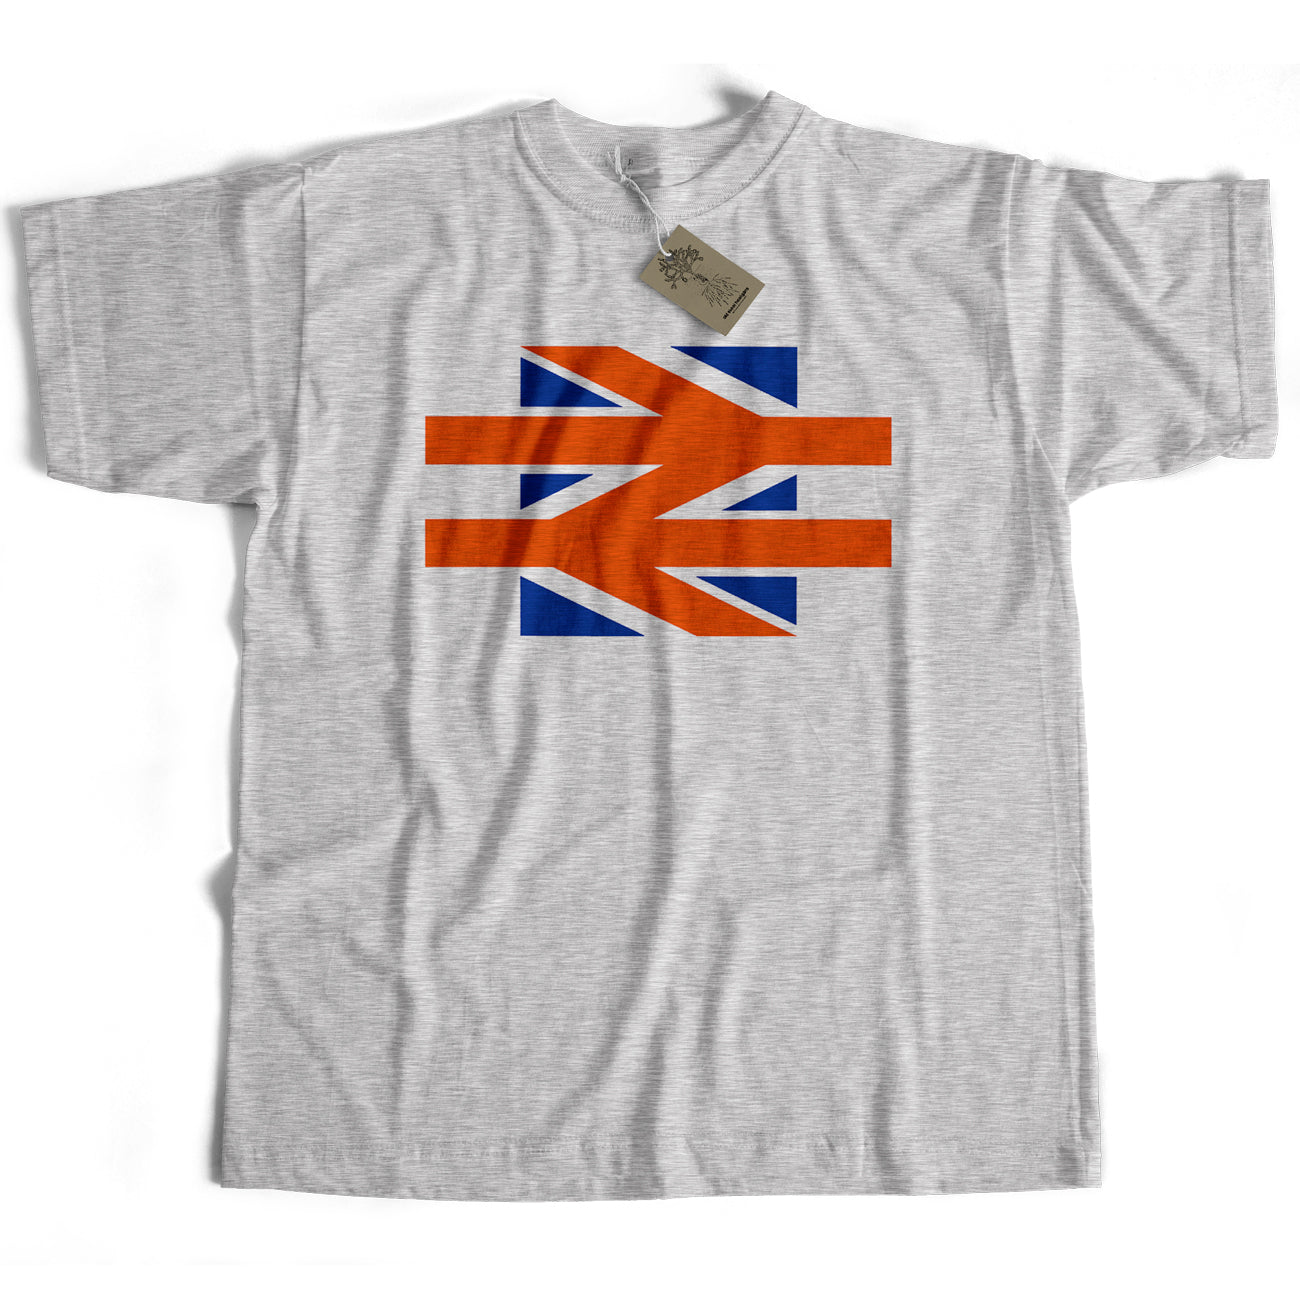 British Rail T Shirt - British Rail Logo Union Jack Version